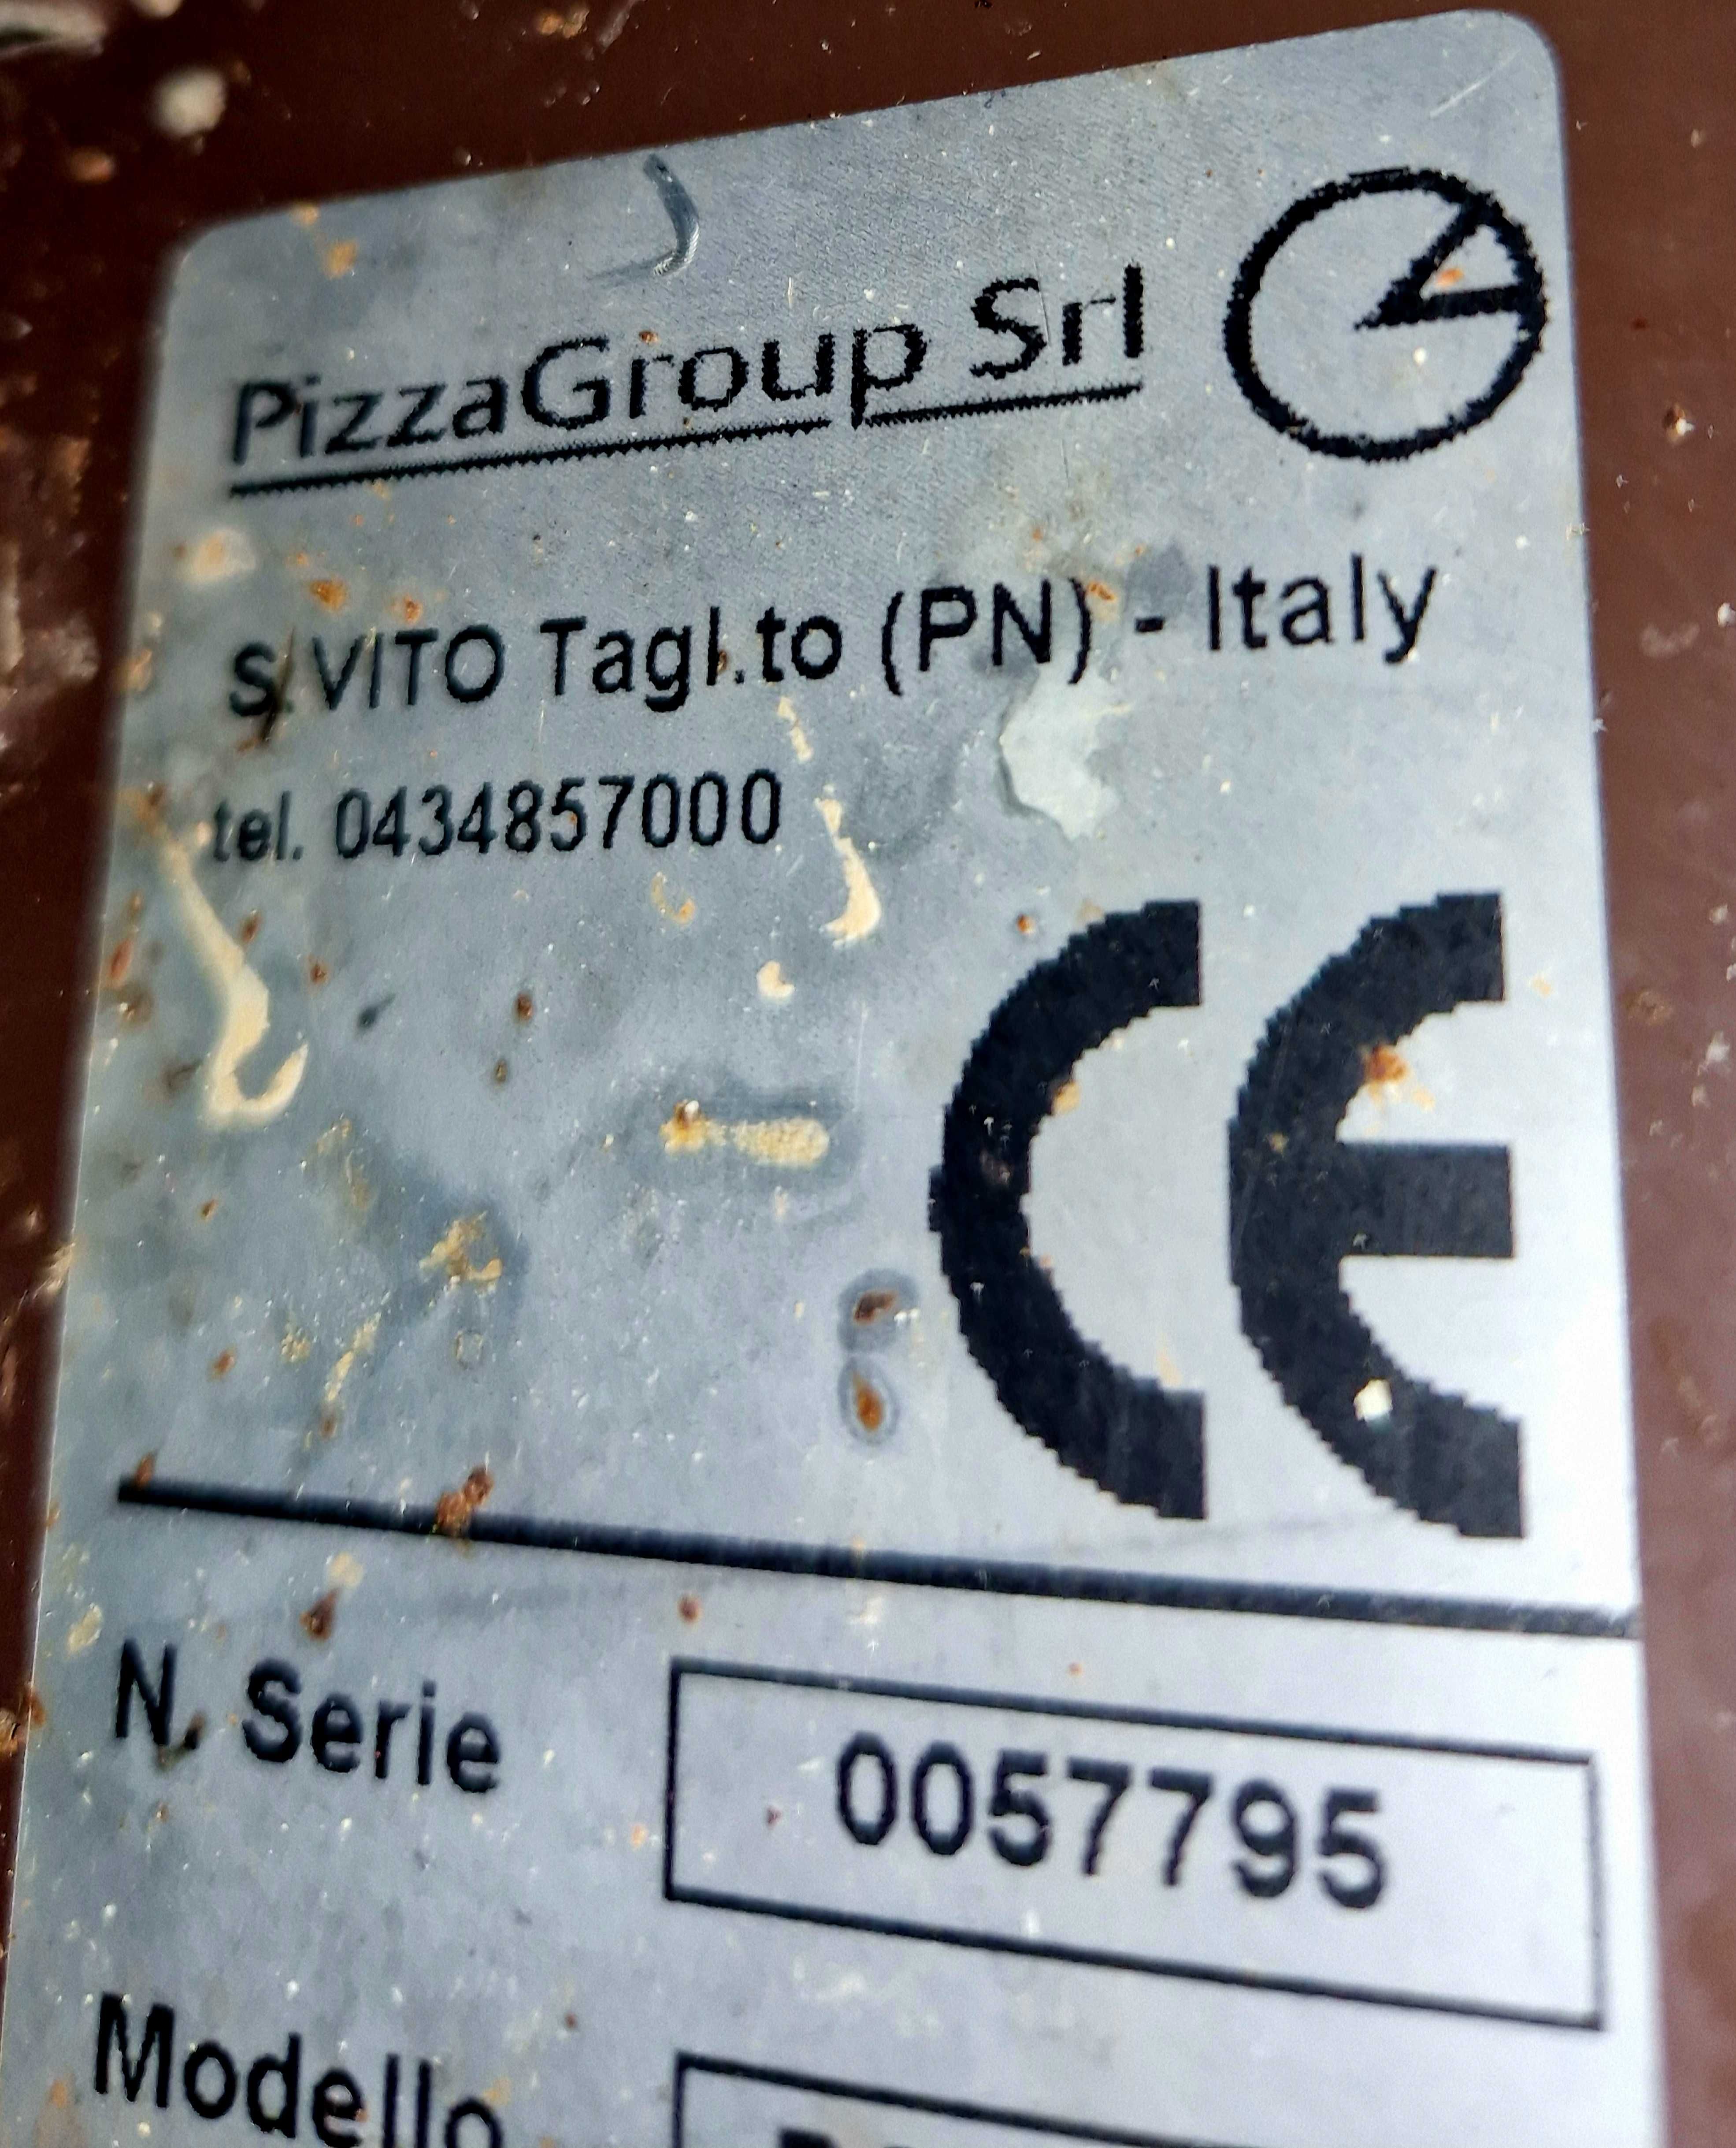 Печь для пиццы Pizza Group baby 2t a піч для піци Італія